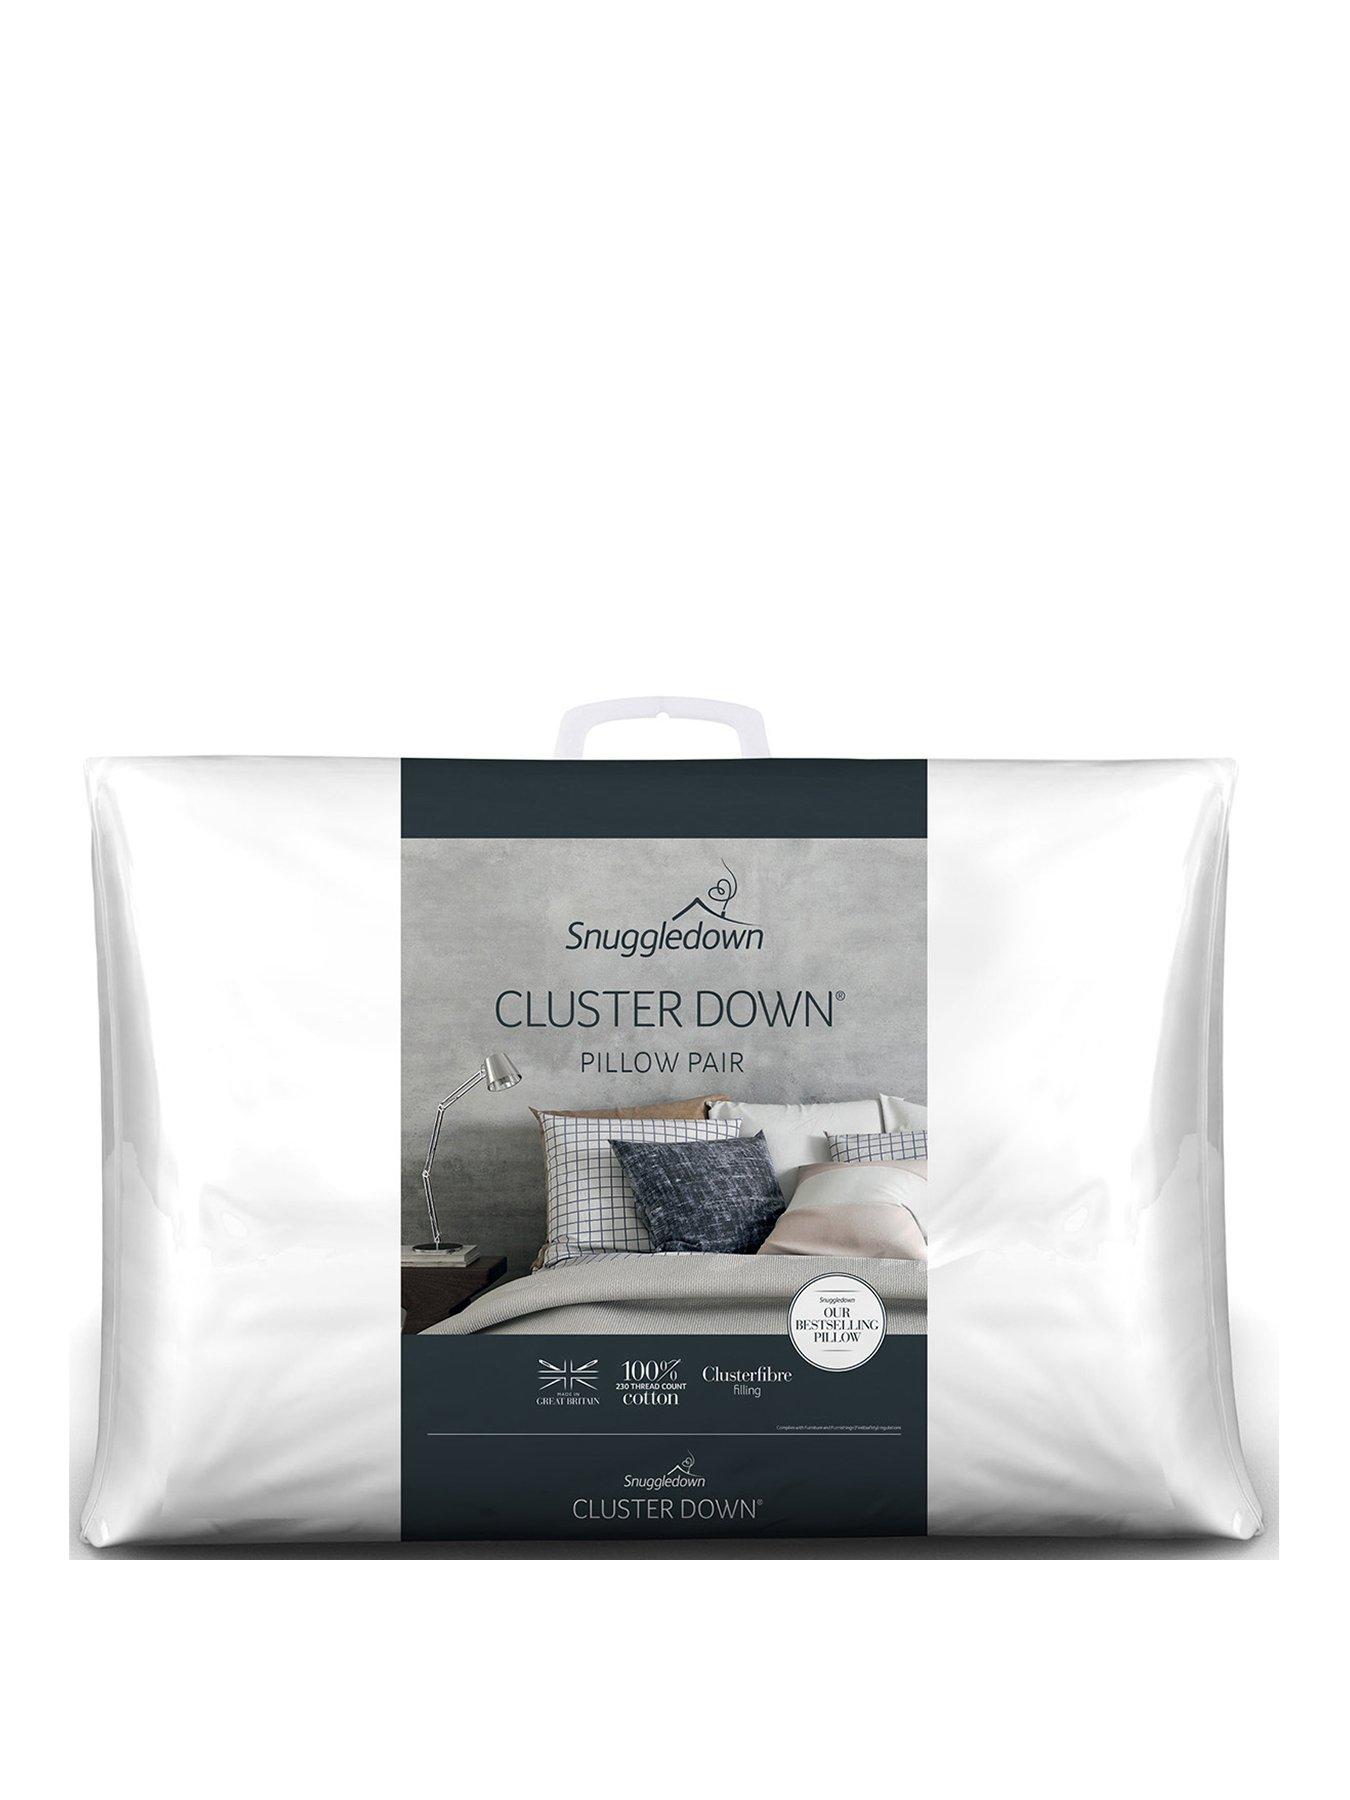 Details about   Silentnight Deep Sleep Pillows Luxury Bounce Back Hollow Polyester Fiber Filling 